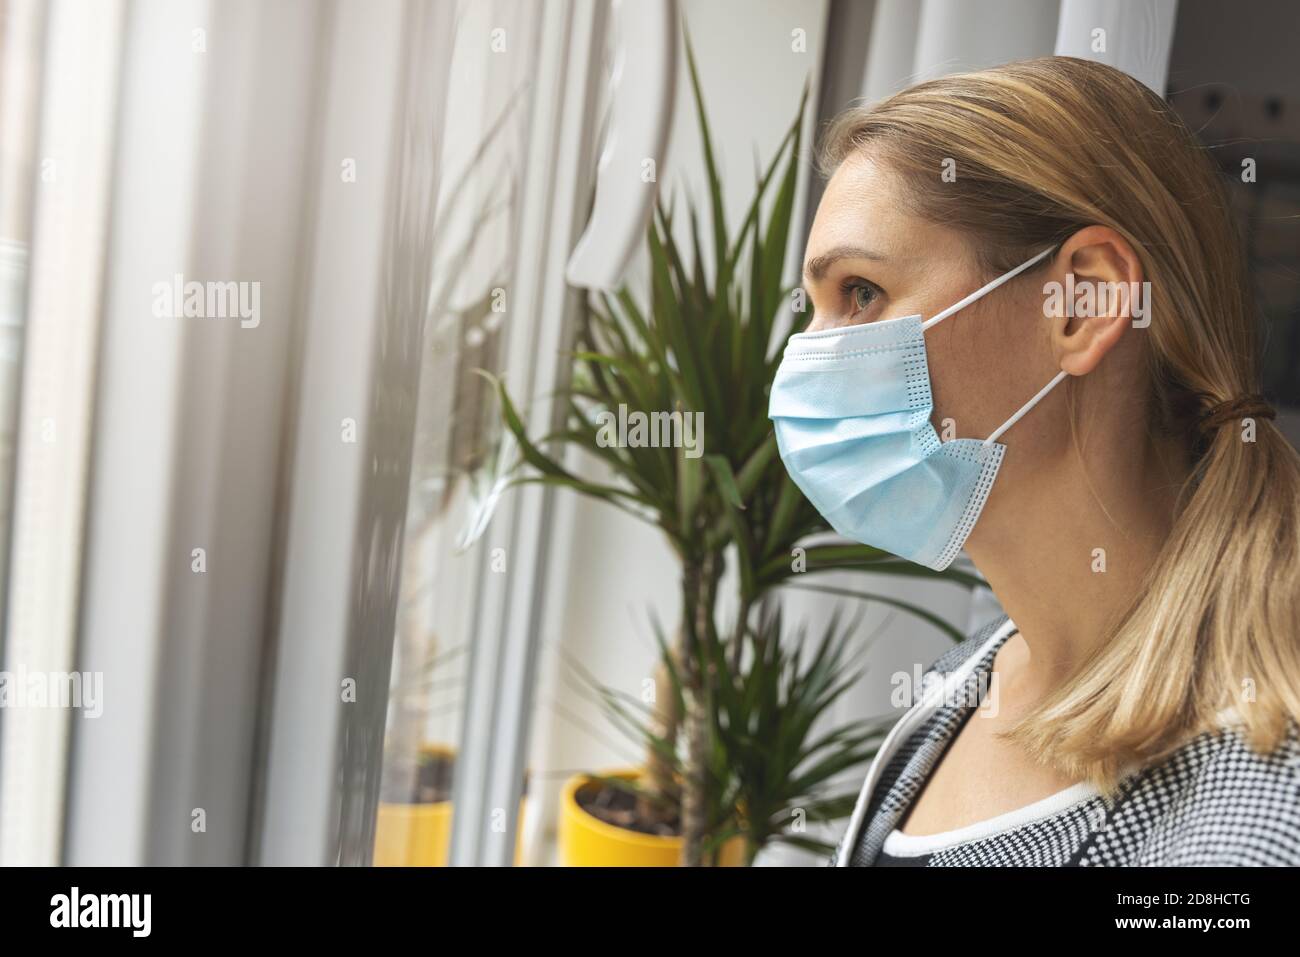 cuarentena en el hogar - mujer joven deprimida con mascarilla médica mirando a través de la ventana Foto de stock